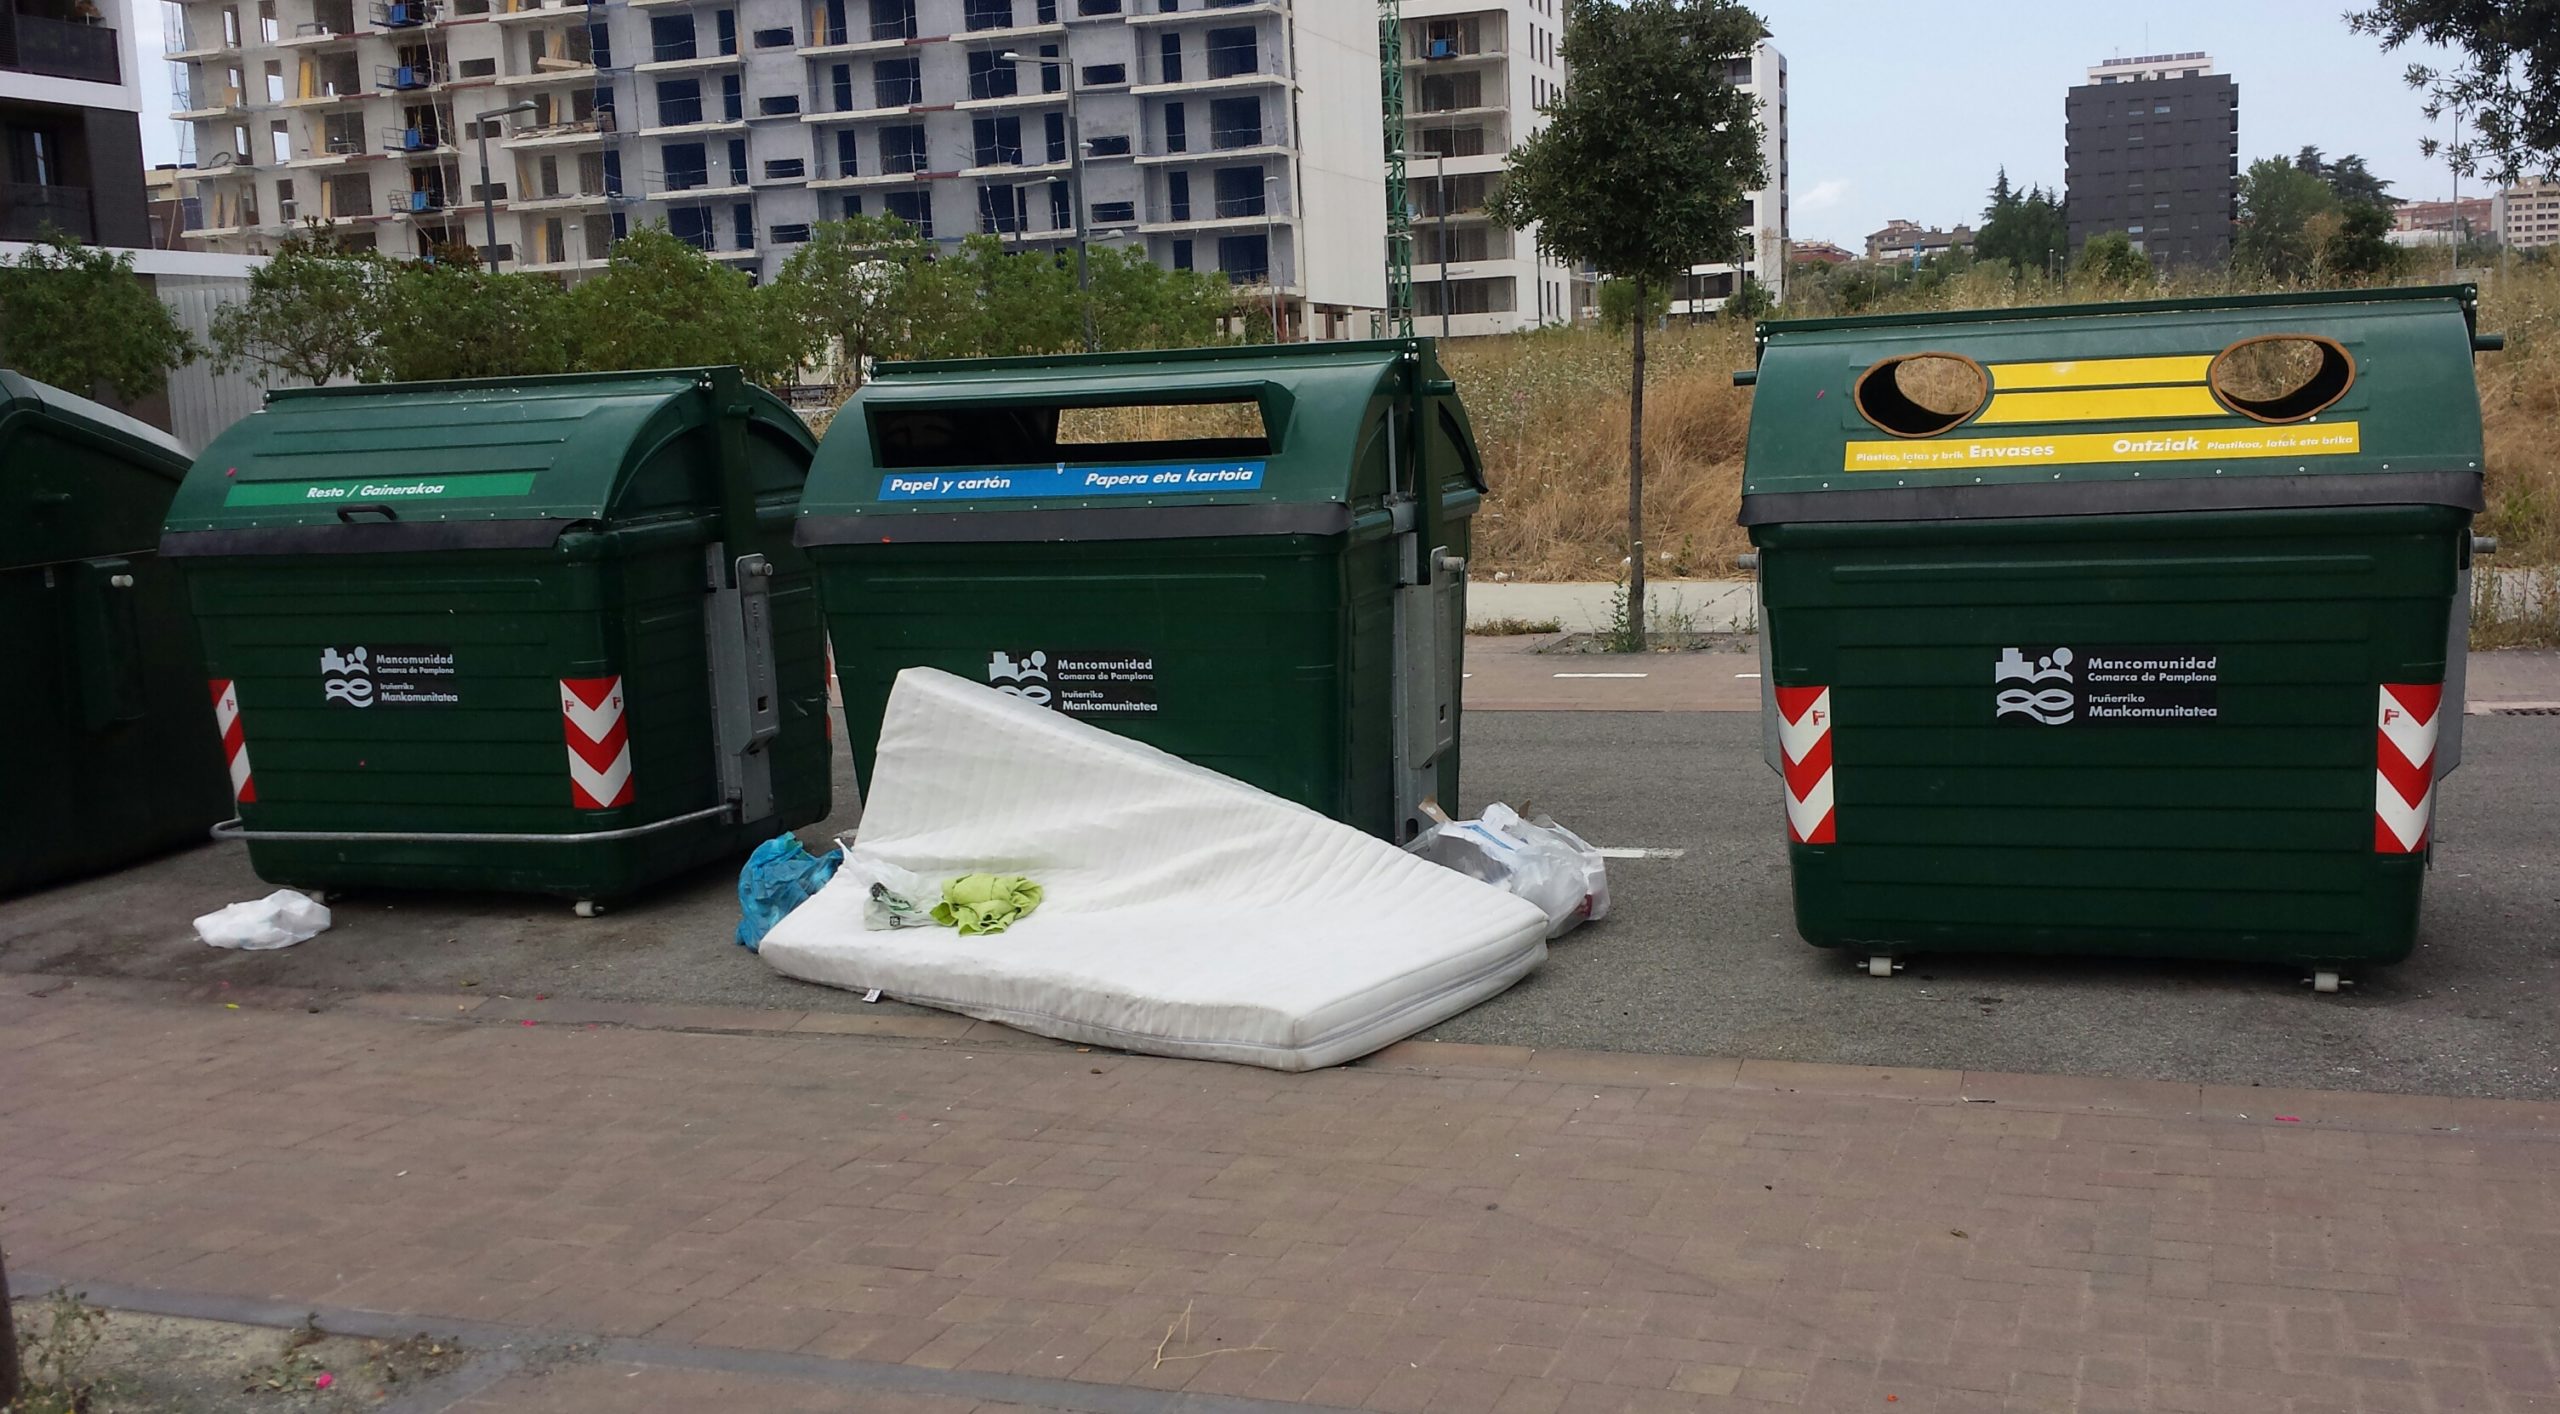 Fotodenuncia: basura fuera de contenedores